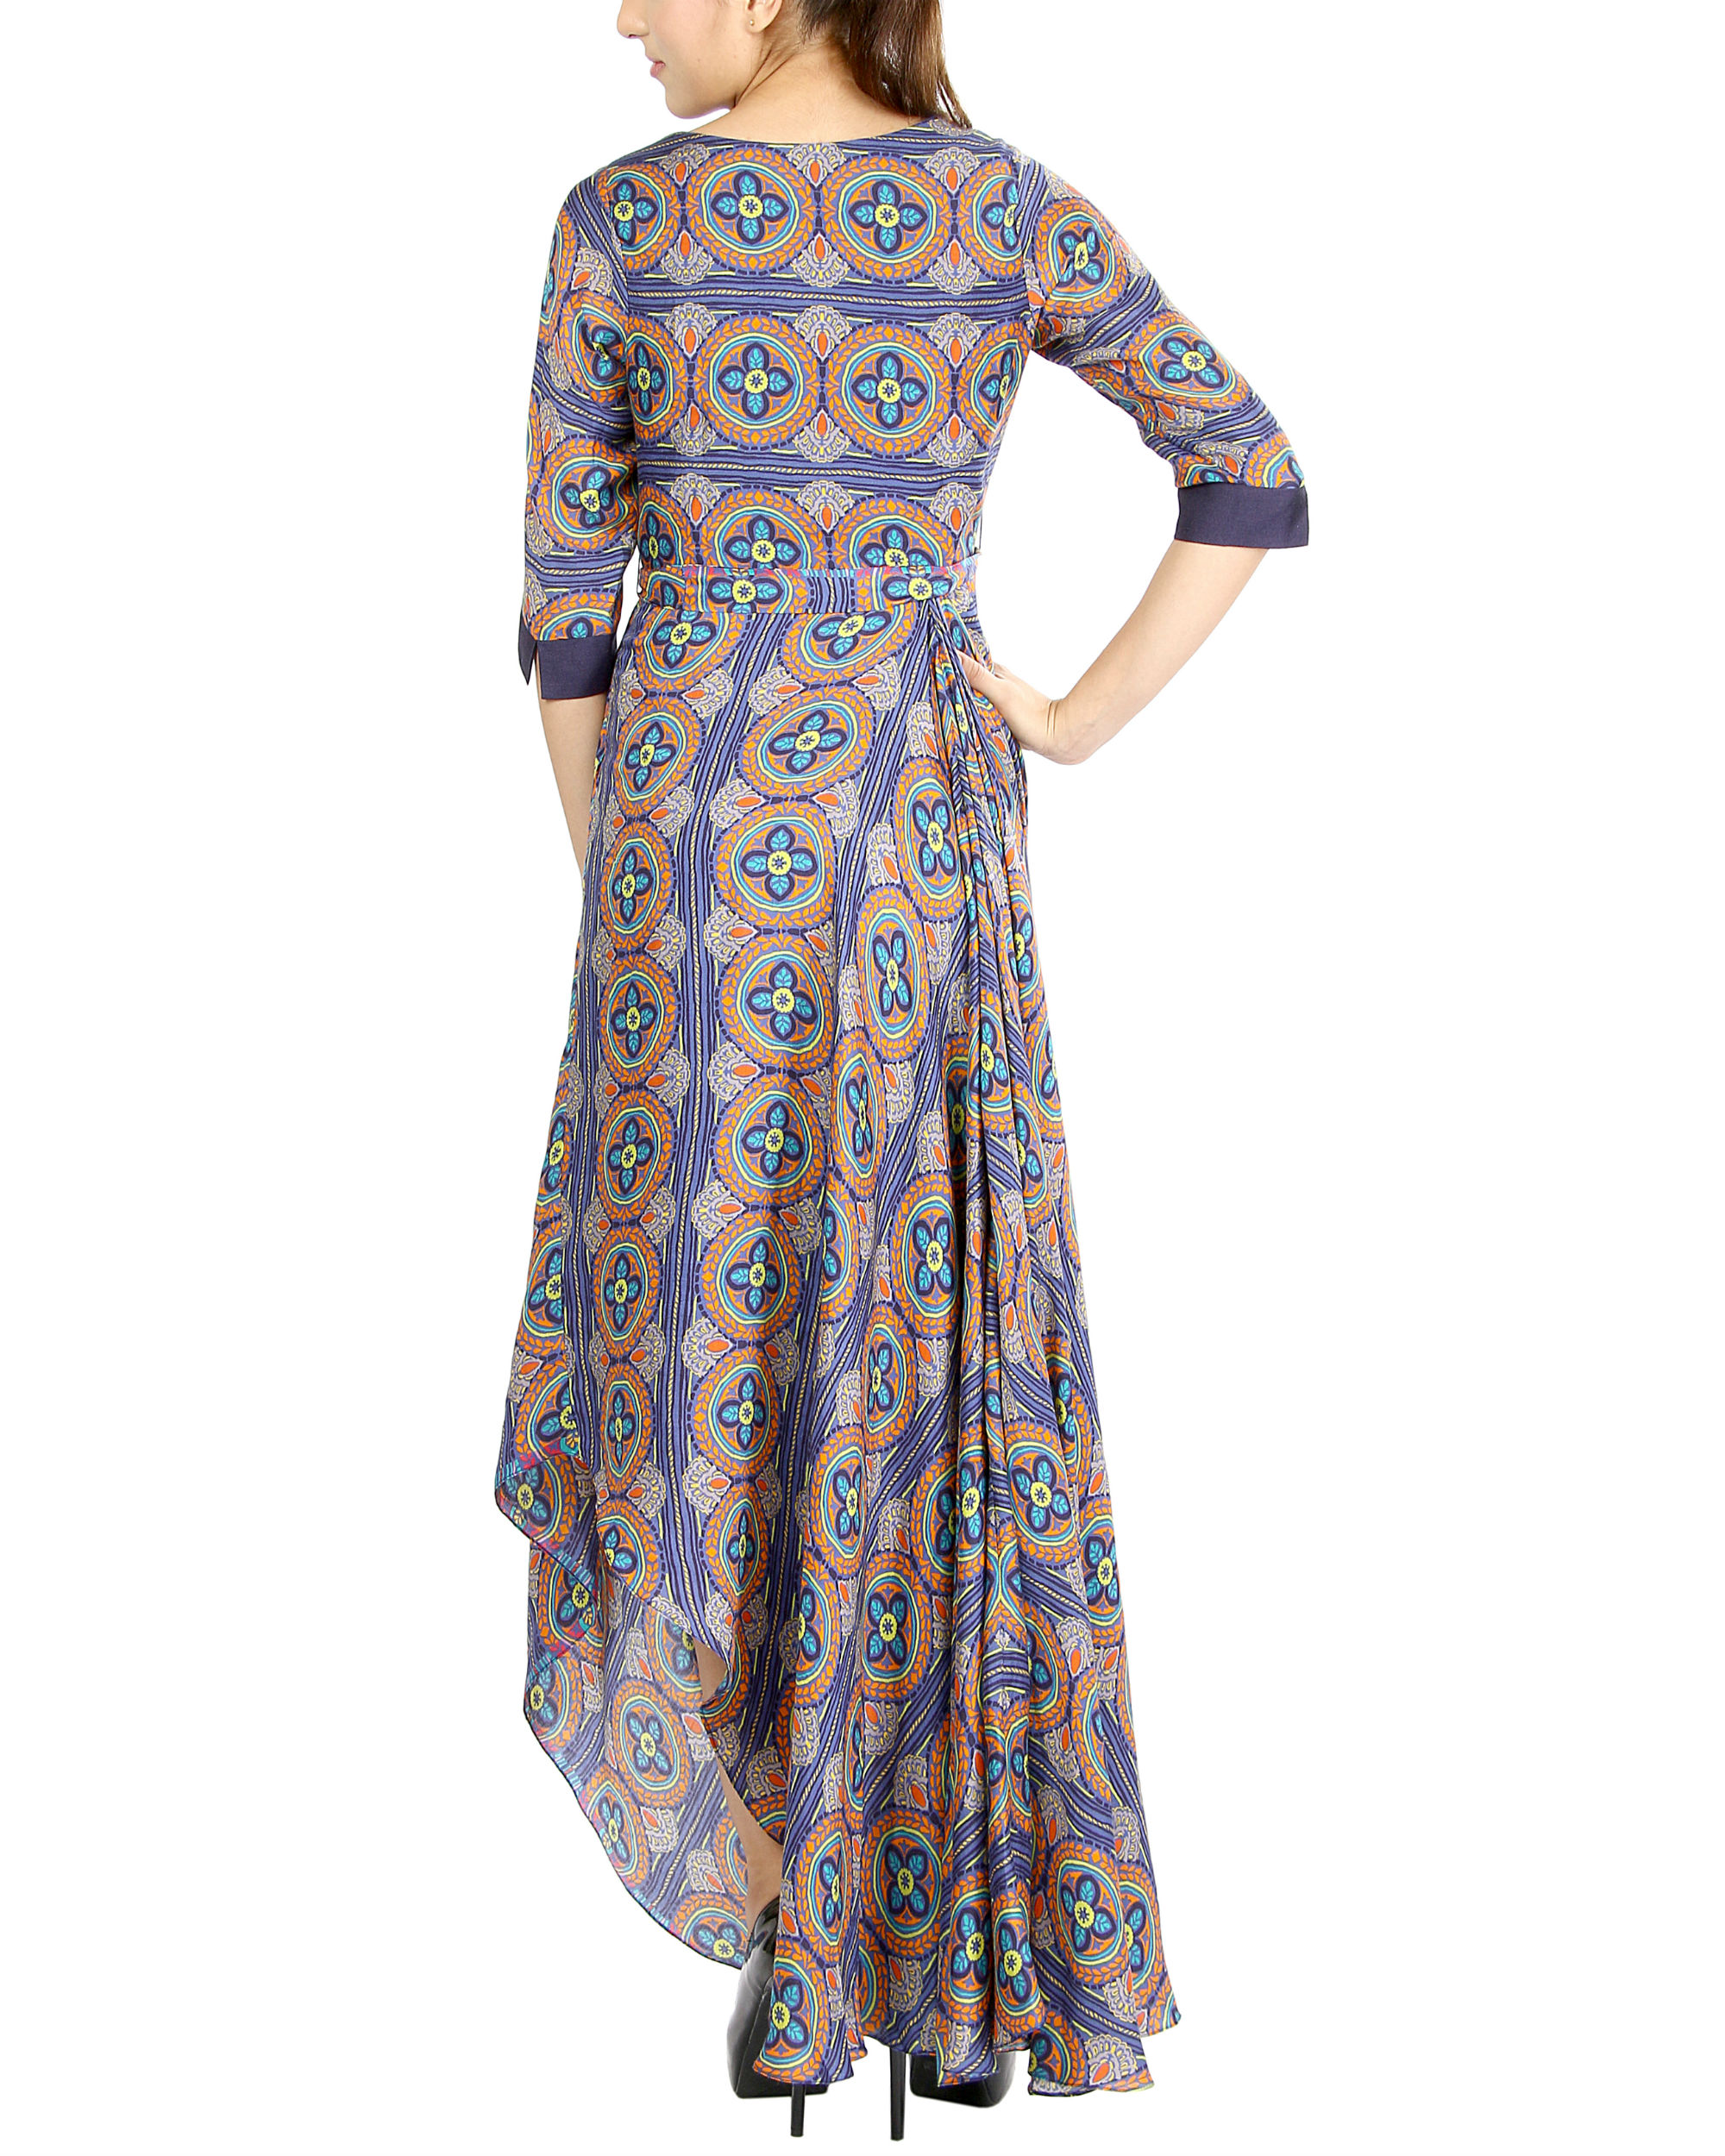 Colourful draped dress by Sougat Paul | The Secret Label